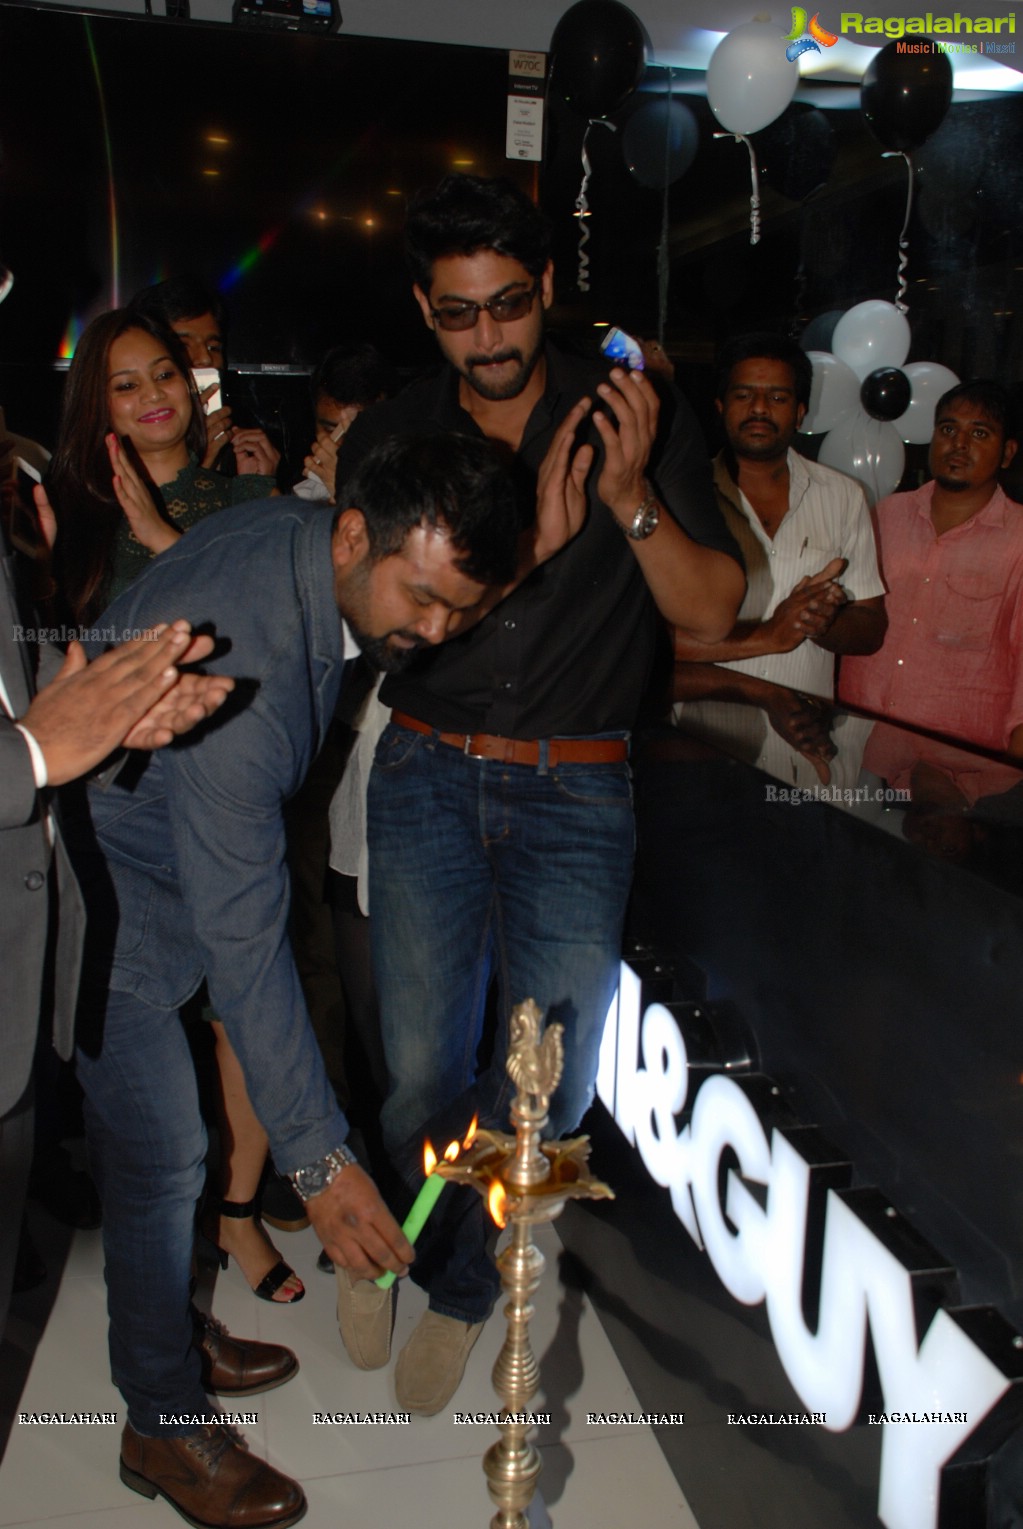 Rana Daggubati launches Toni and Guy at Gachibowli, Hyderabad